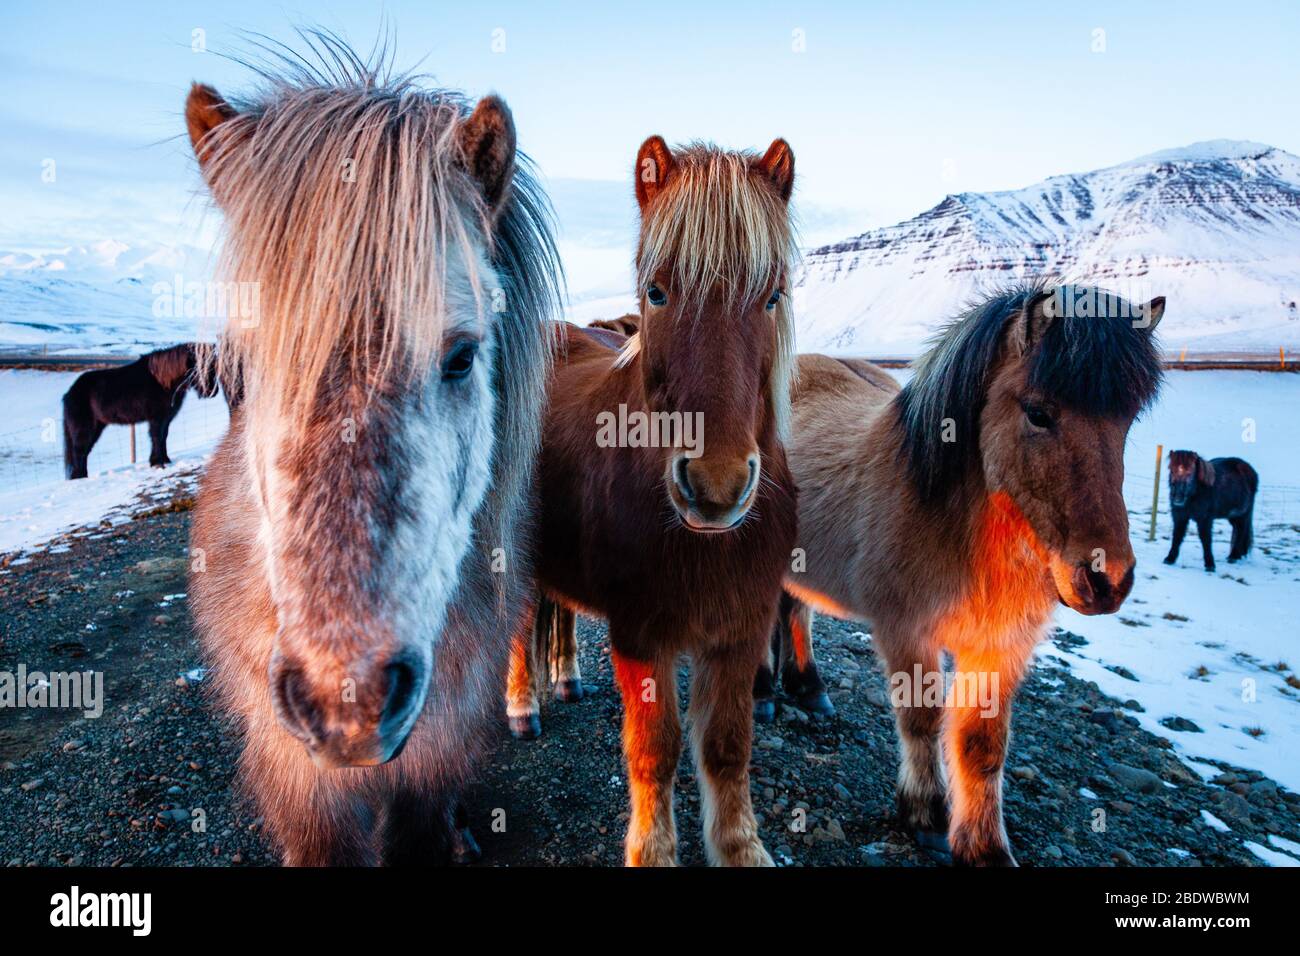 Nahaufnahme Porträt von drei isländischen Pferden (Equus ferus caballus) bei Sonnenuntergang in verschneiten isländischen Landschaft, Island Stockfoto